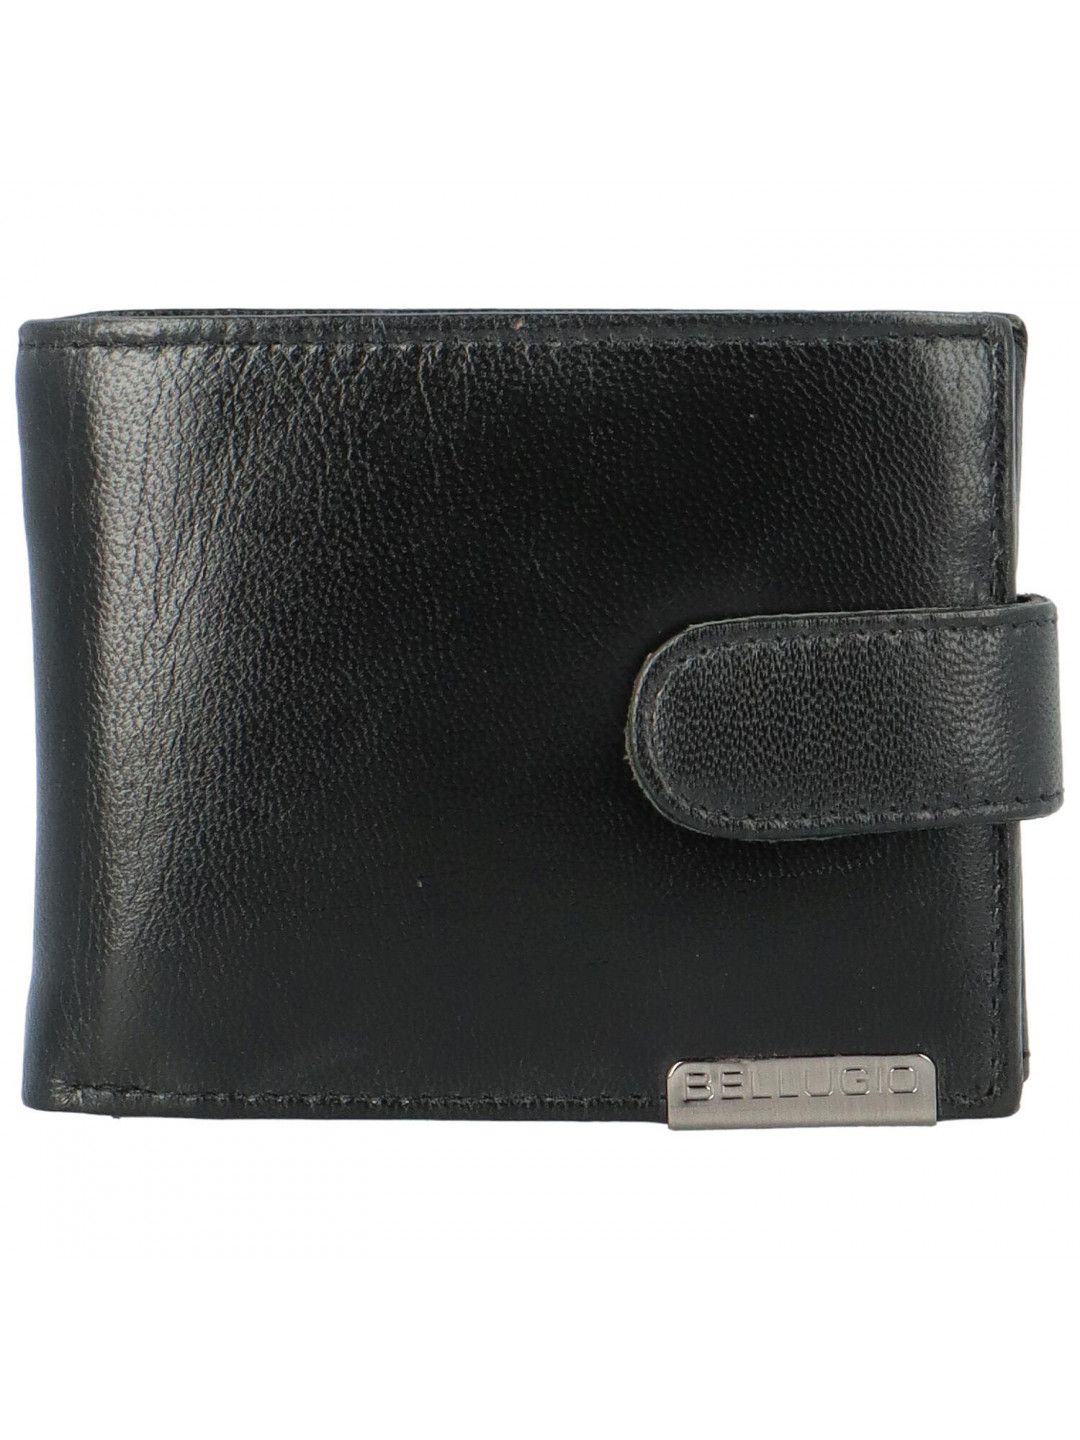 Pánská kožená peněženka Bellugio Liam černá